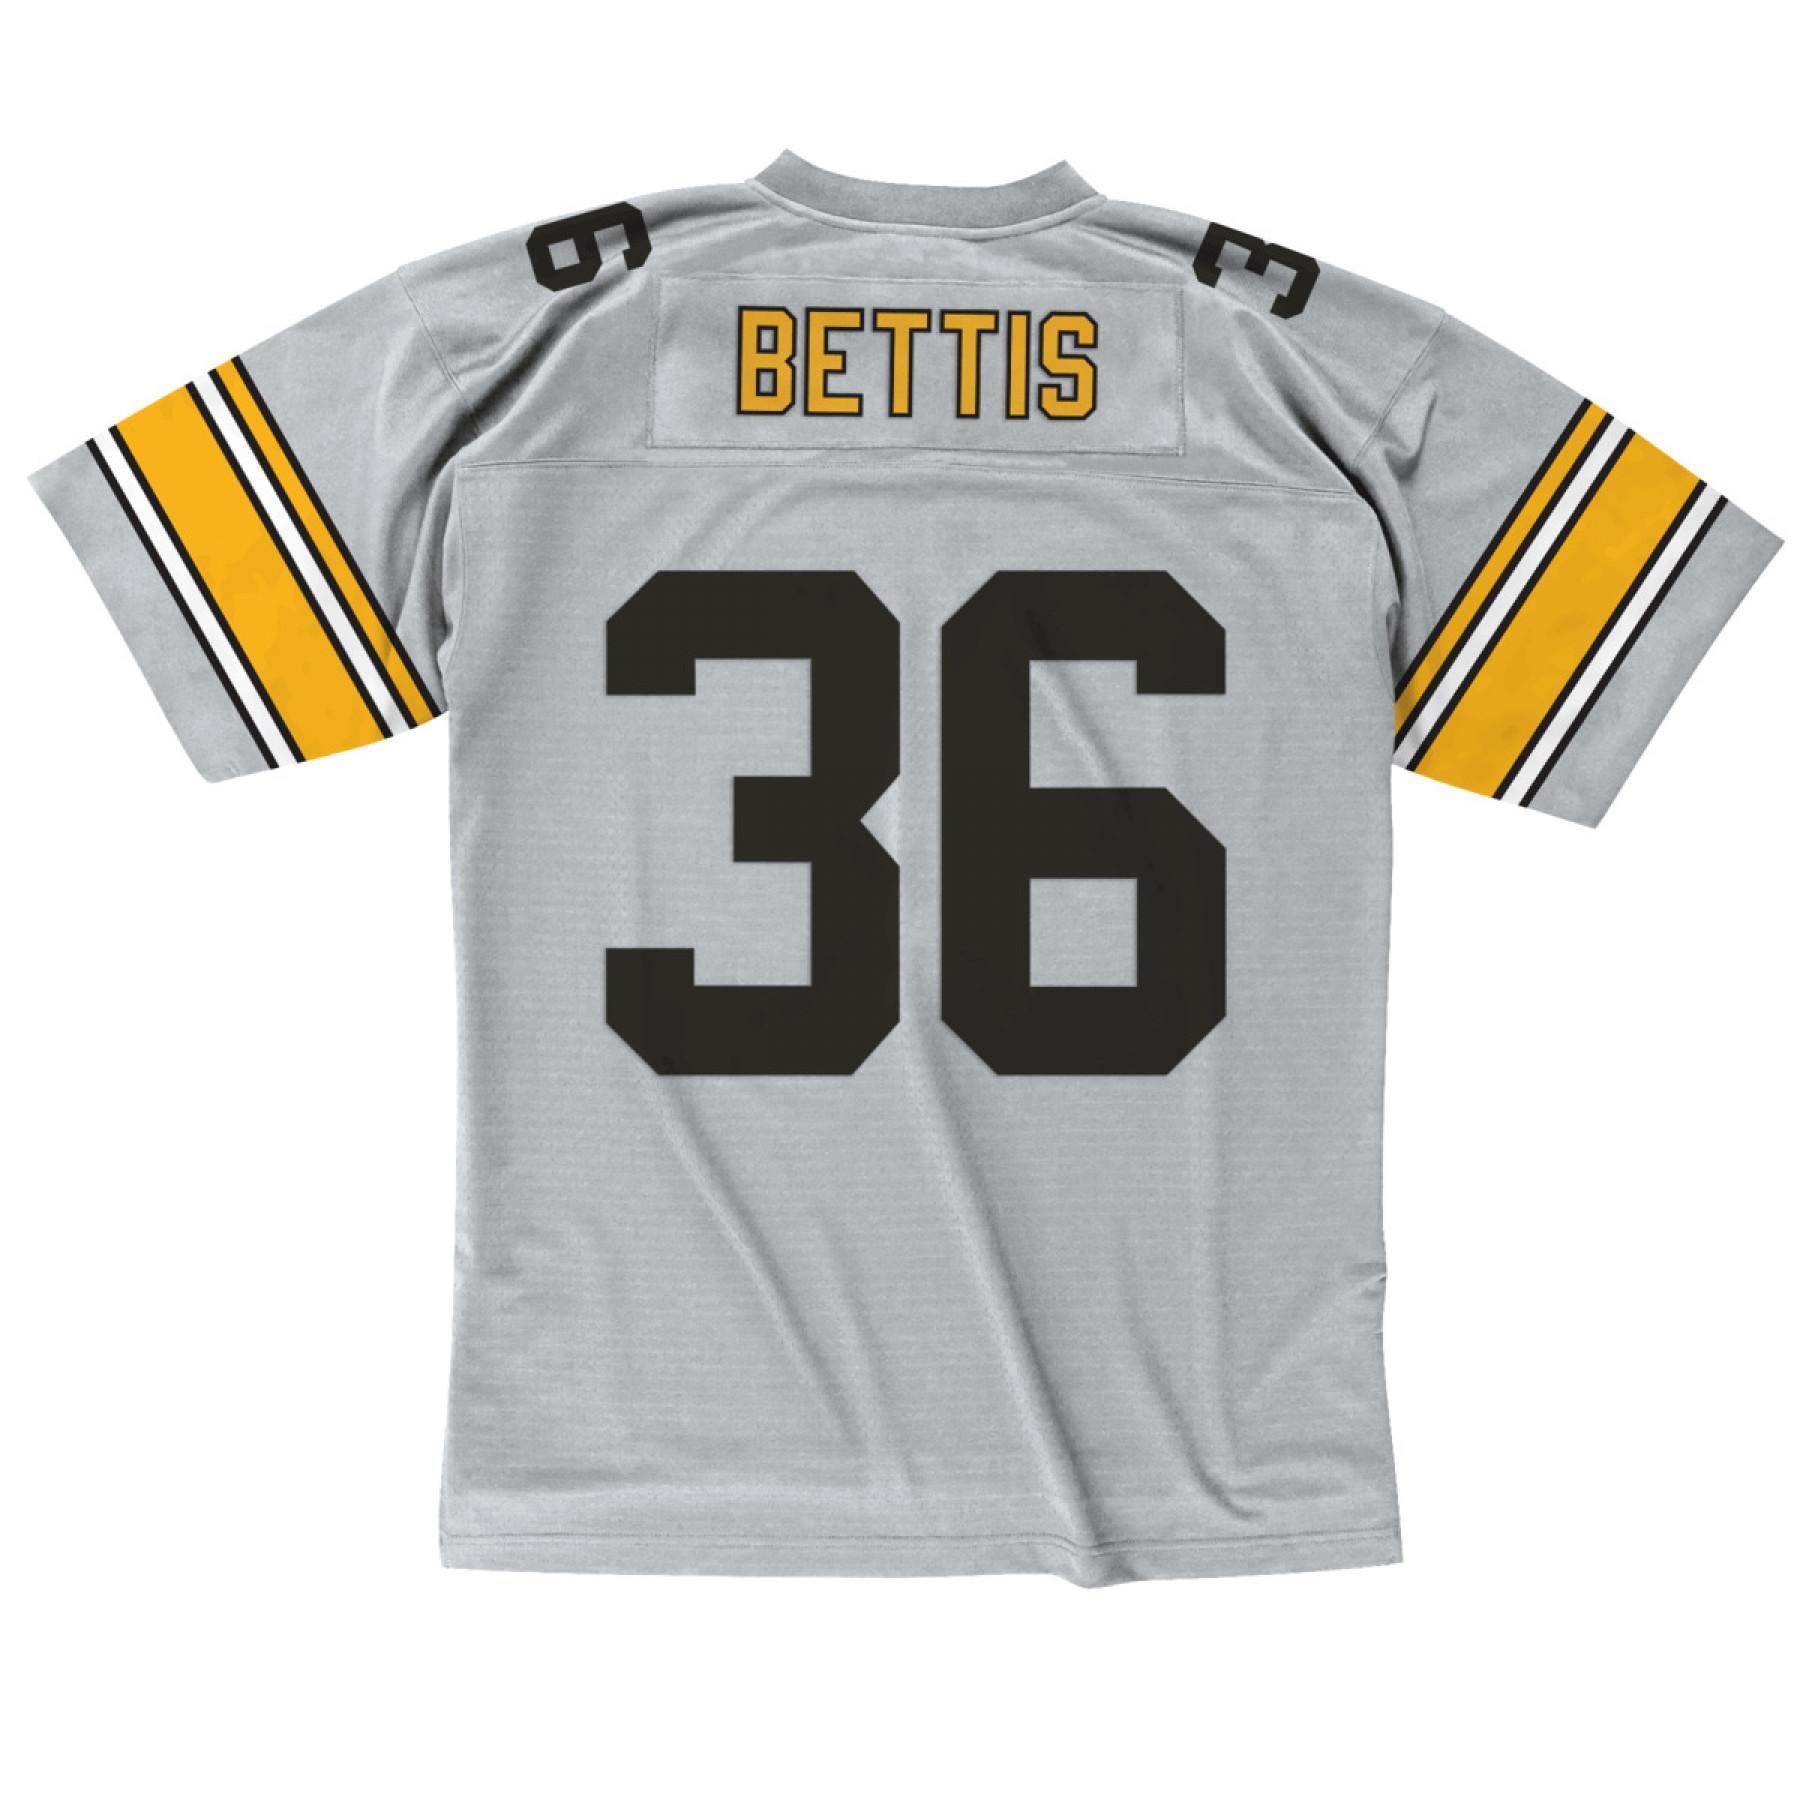 Vintage trikå Pittsburgh Steelers platinum Jerome Bettis